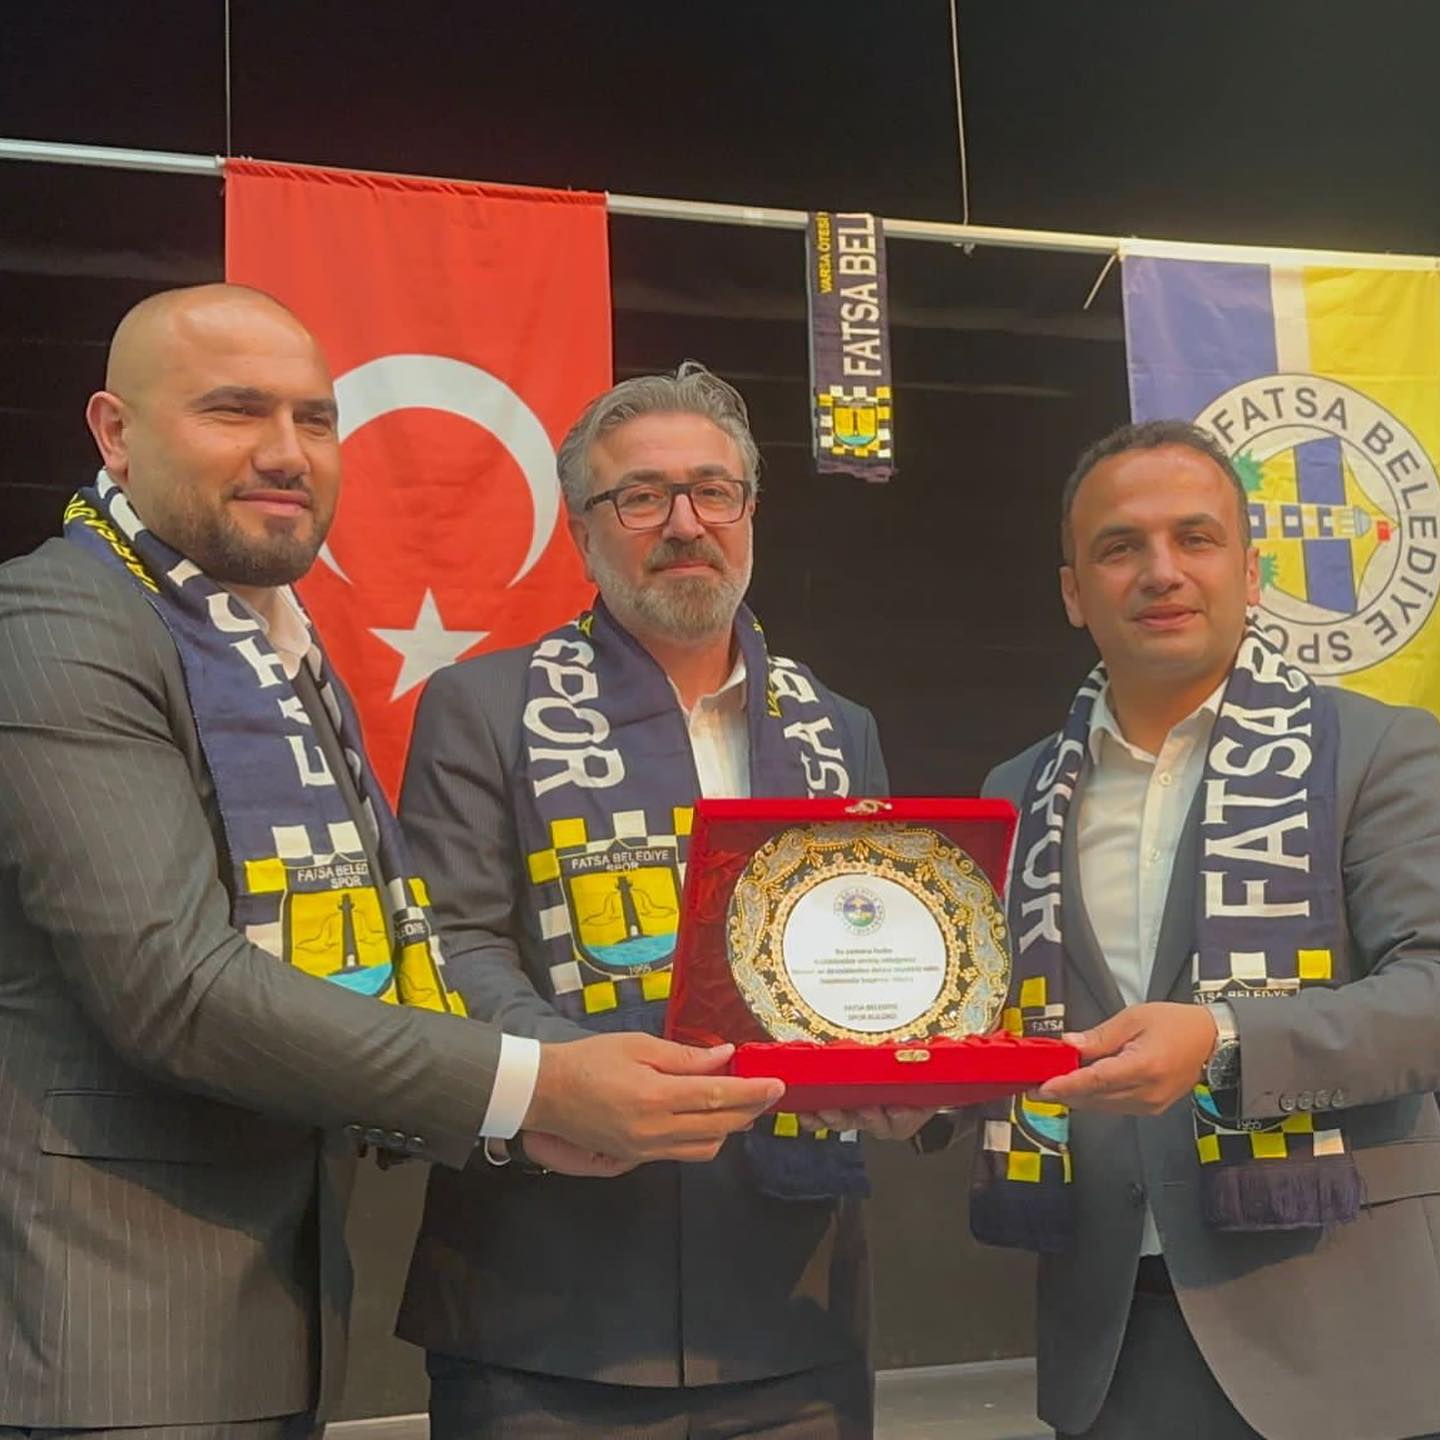  Fatsa Belediyespor Başkanı: ”İlk Maç Ücretsiz Olacak”